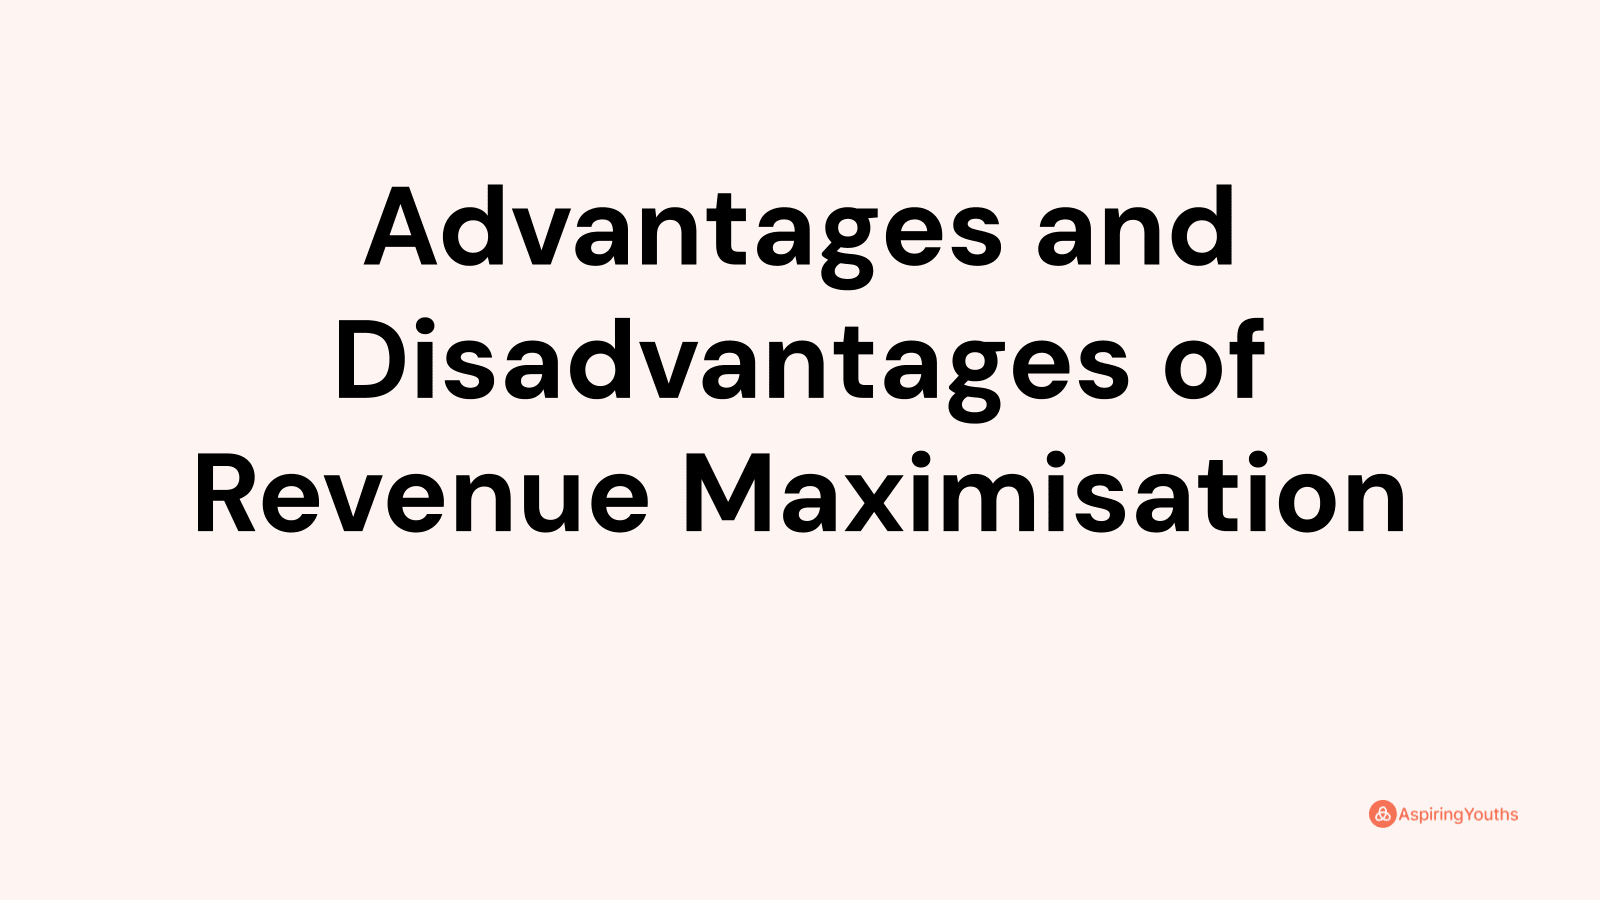 Advantages and disadvantages of Revenue Maximisation